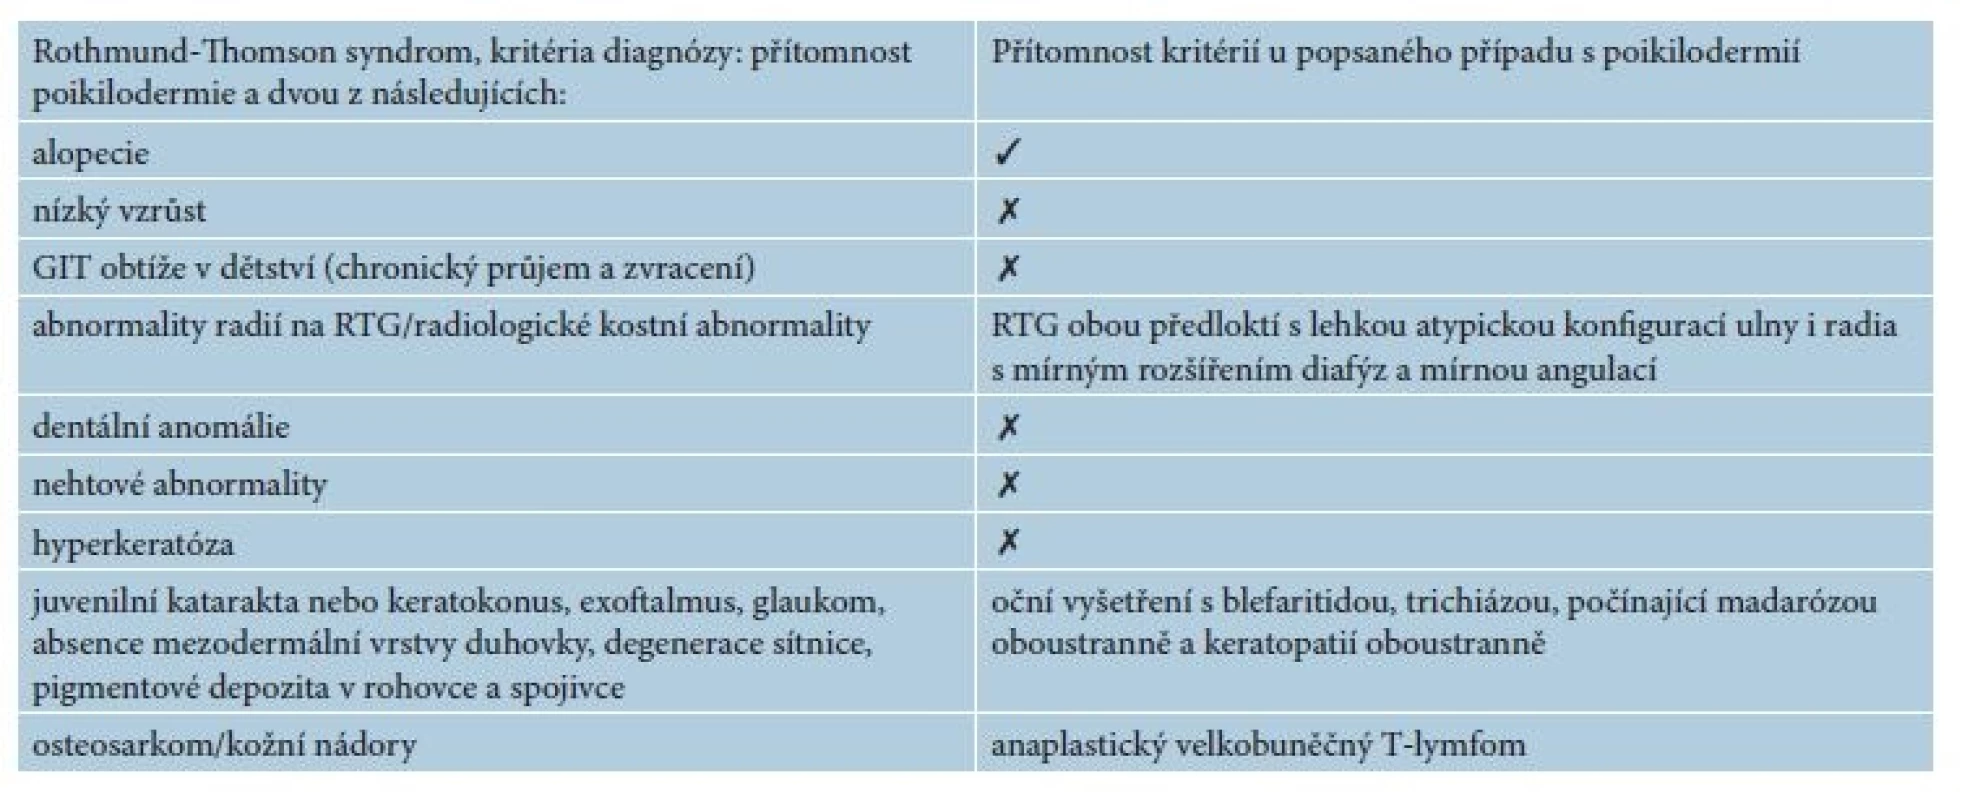 Rothmund-Thomson syndrom a přehled kritérií u popsaného případu